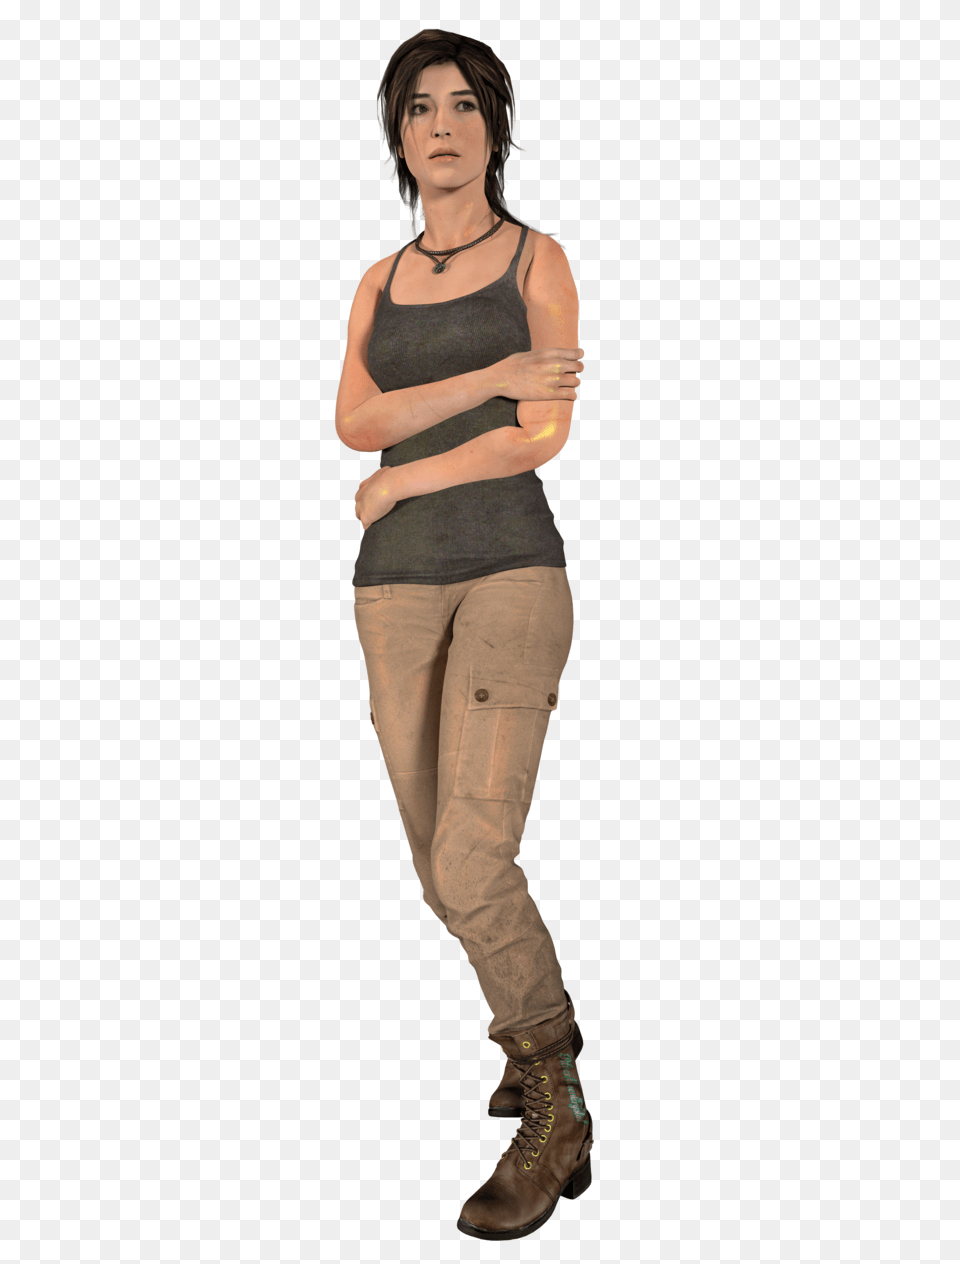 Lara Croft, Clothing, Pants, Teen, Person Png Image